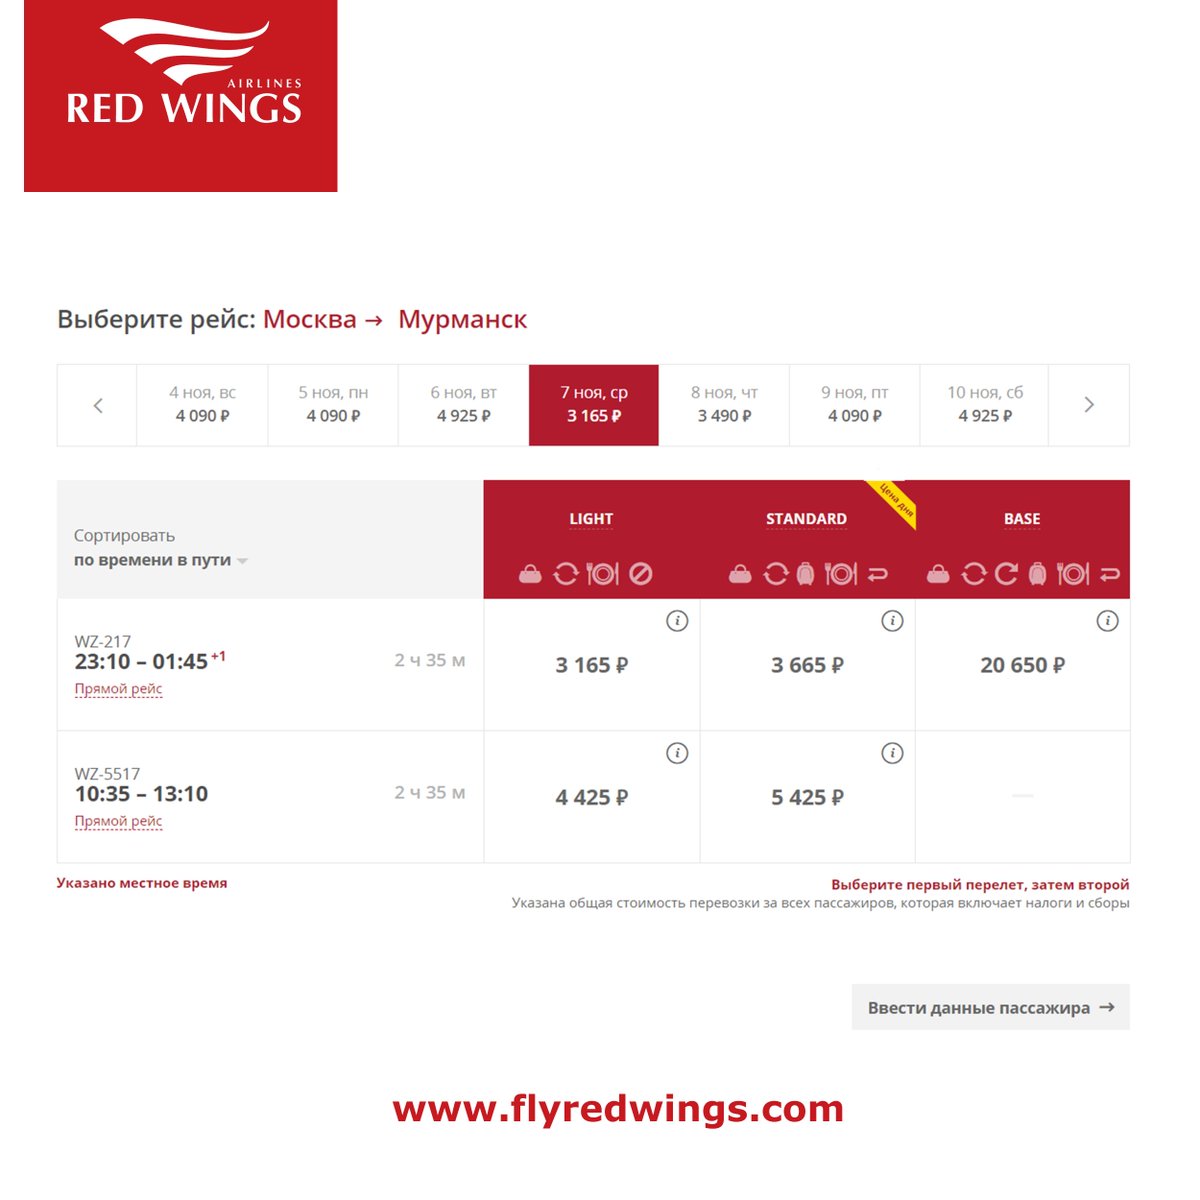 Билеты на самолет red wings официальный сайт внуково цены авиабилетов